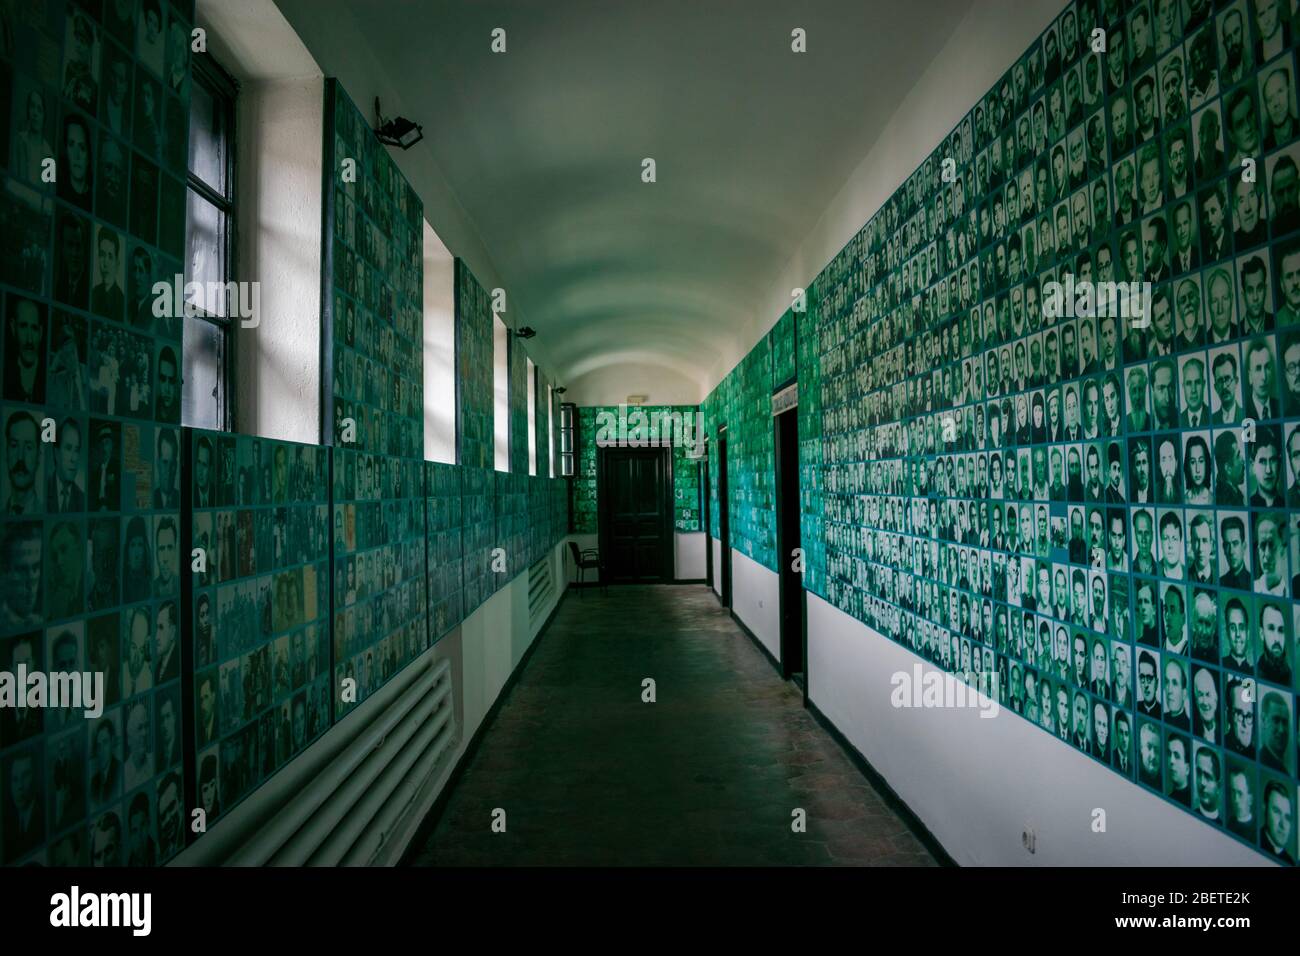 Das Innere eines kommunistischen Gefängnisses - Denkmal der Opfer des Kommunismus und des Widerstands, Memorial Sighet, Rumänien Stockfoto